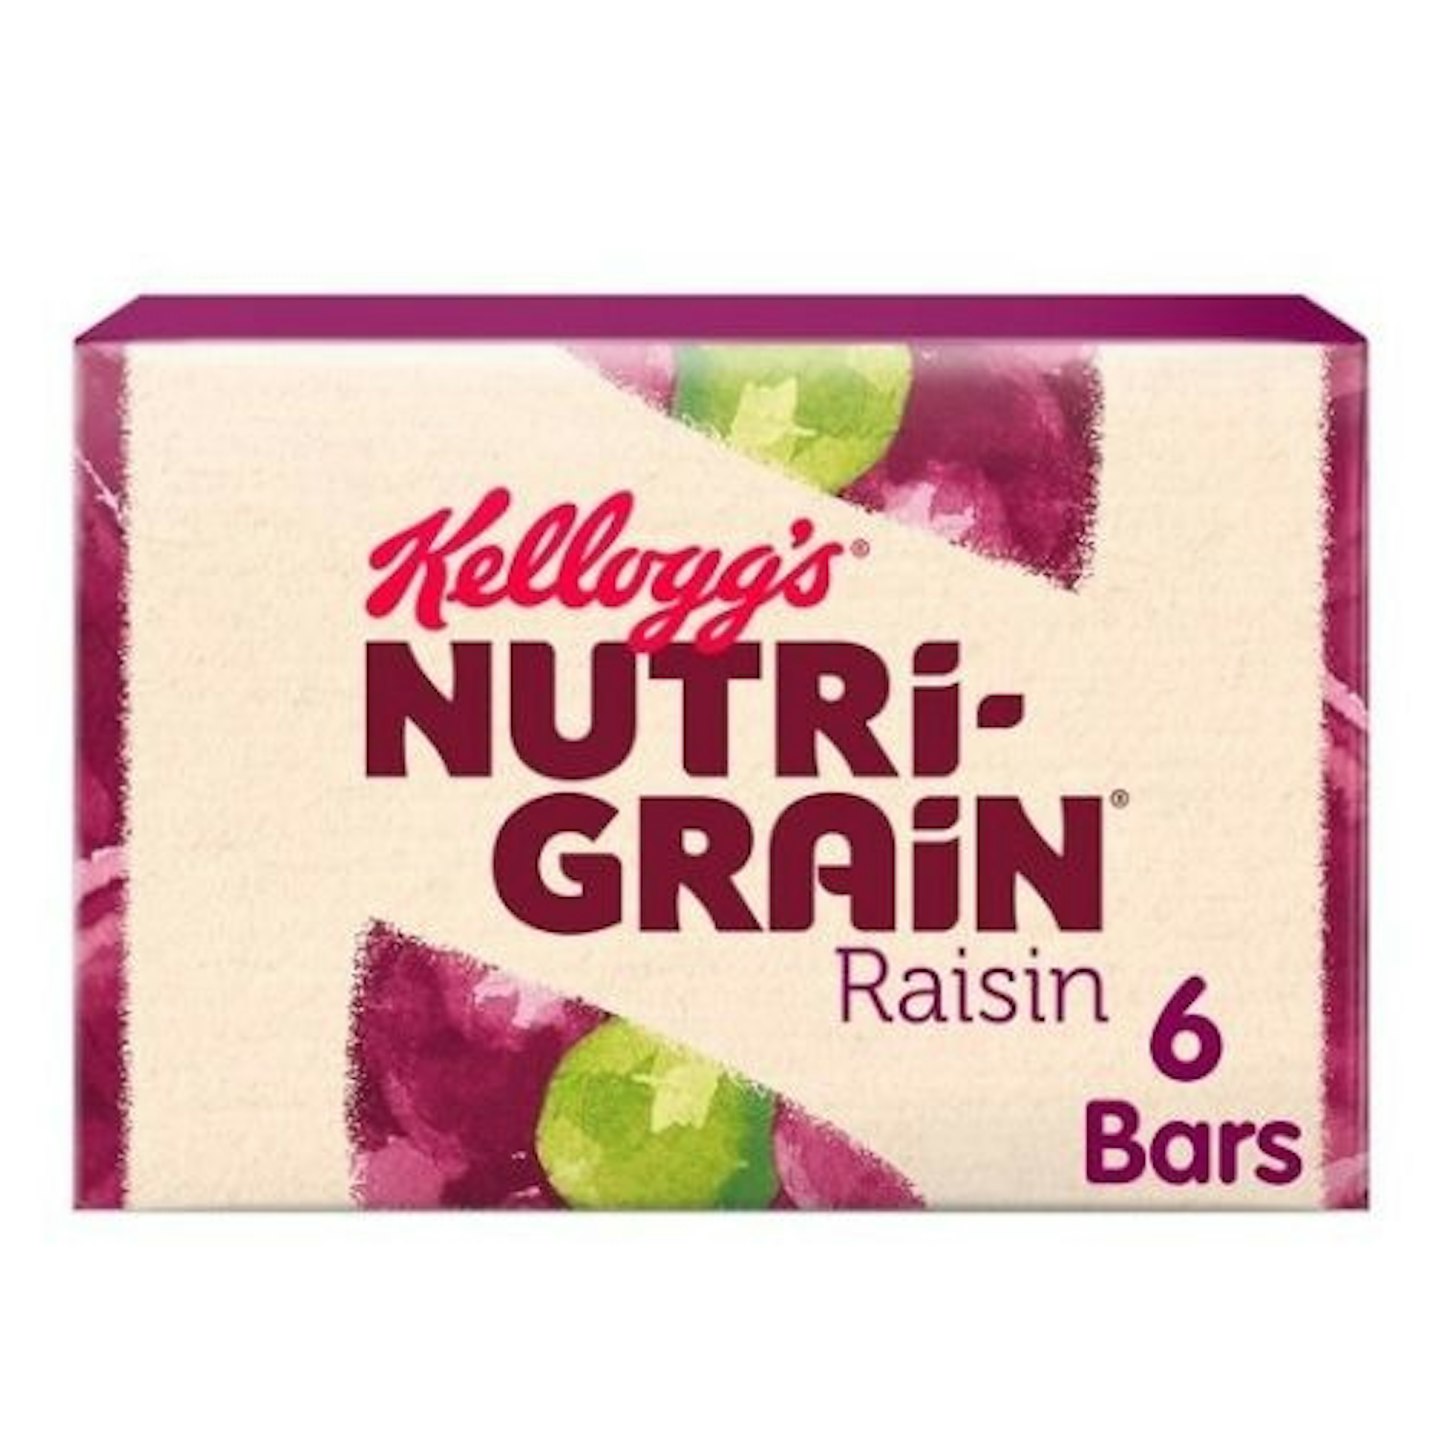 Kellogg's Nutri-Grain Raisin